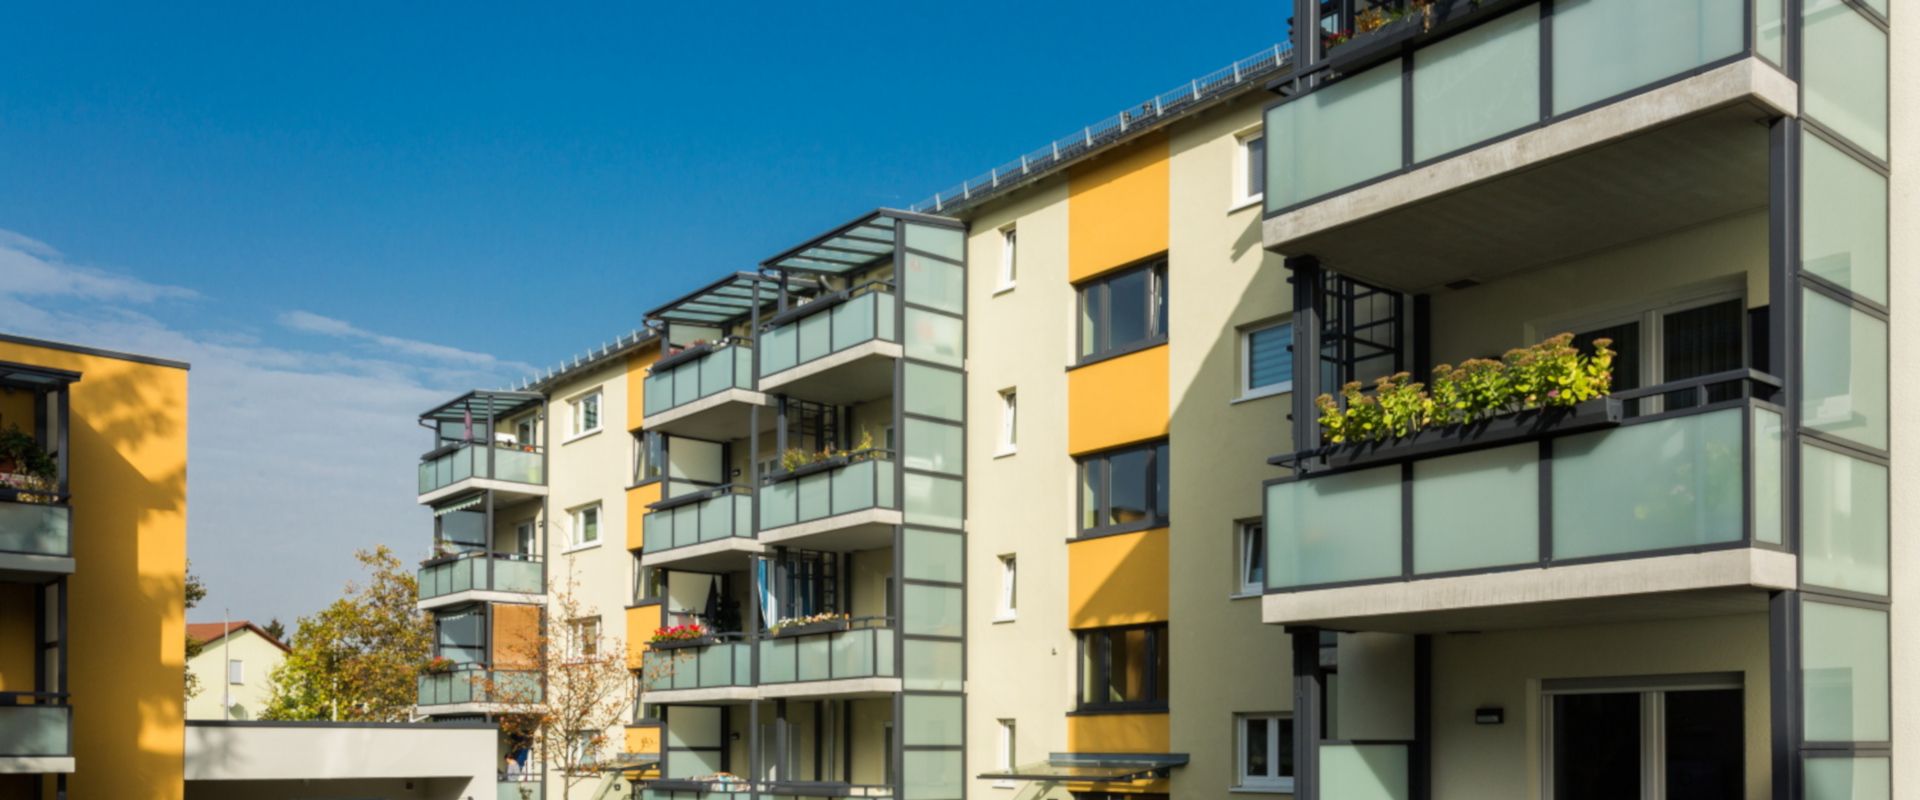 Sicht auf die Balkone der sanierten Mehrfamilienhäuser in Mainz-Kostheim.